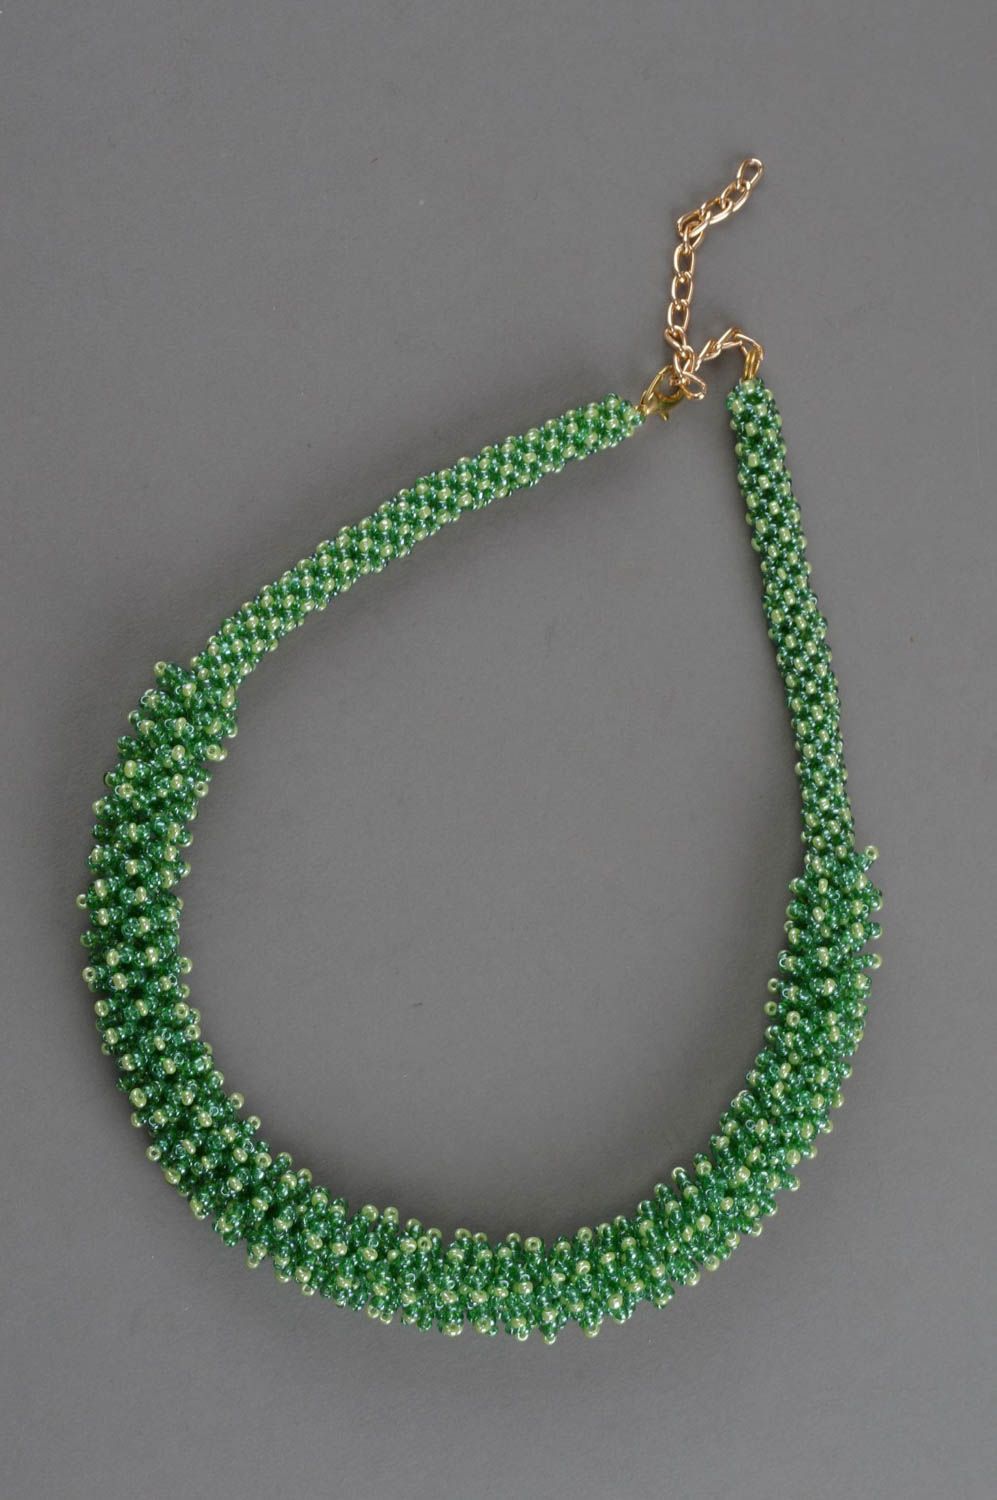 Ожерелье из бисера ручной работы авторское красивое в зеленых тонах стильное фото 3